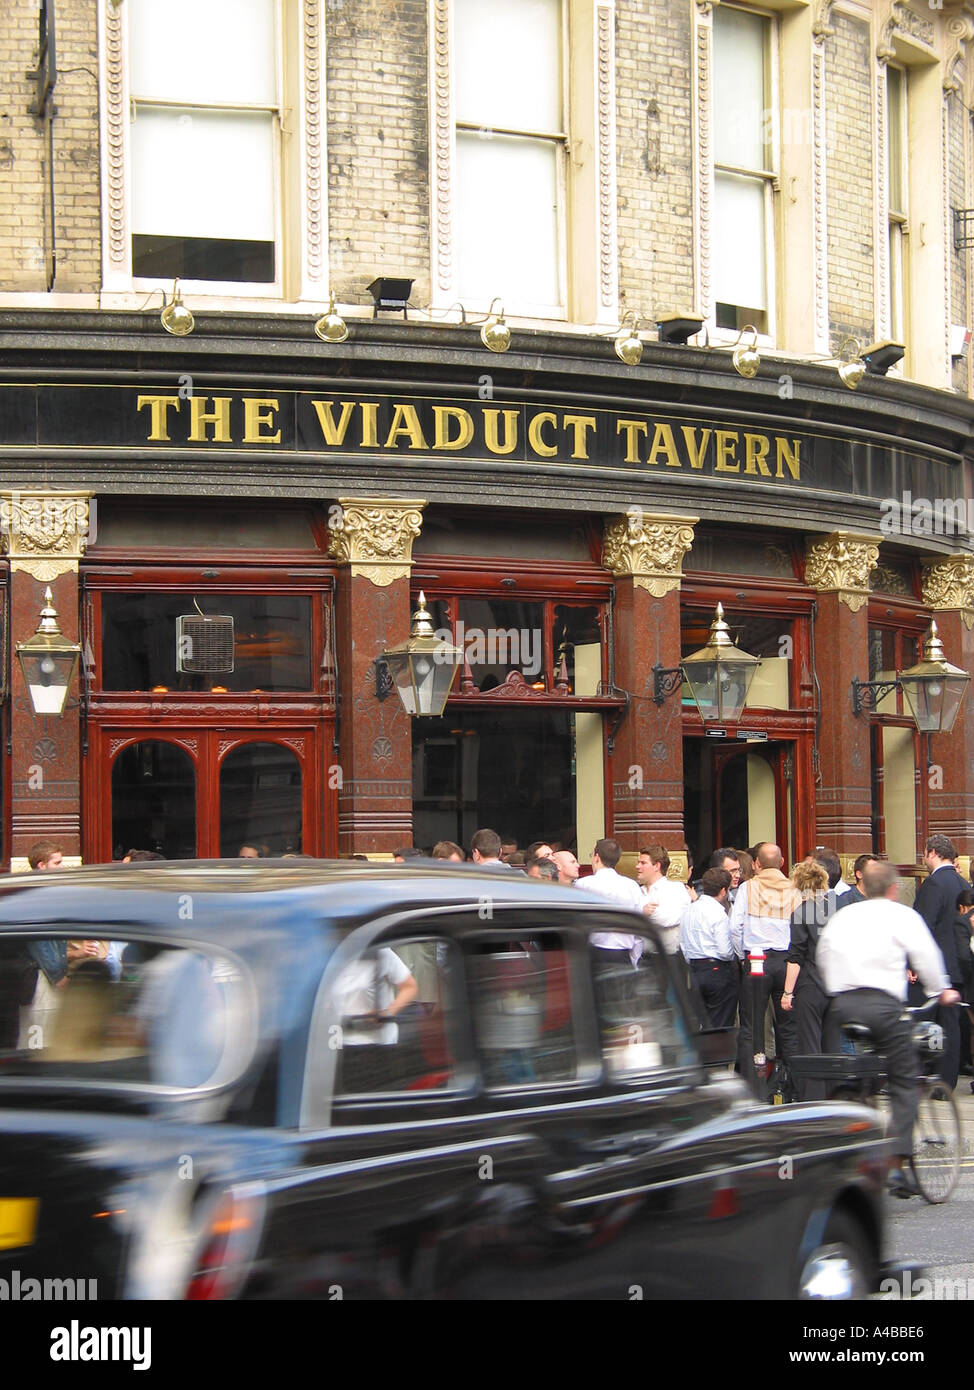 Les travailleurs de la ville qui profitent d'une bière après-travail, le Viaduct Tavern London Pub, Newgate Street, Londres, Angleterre, Royaume-Uni Banque D'Images